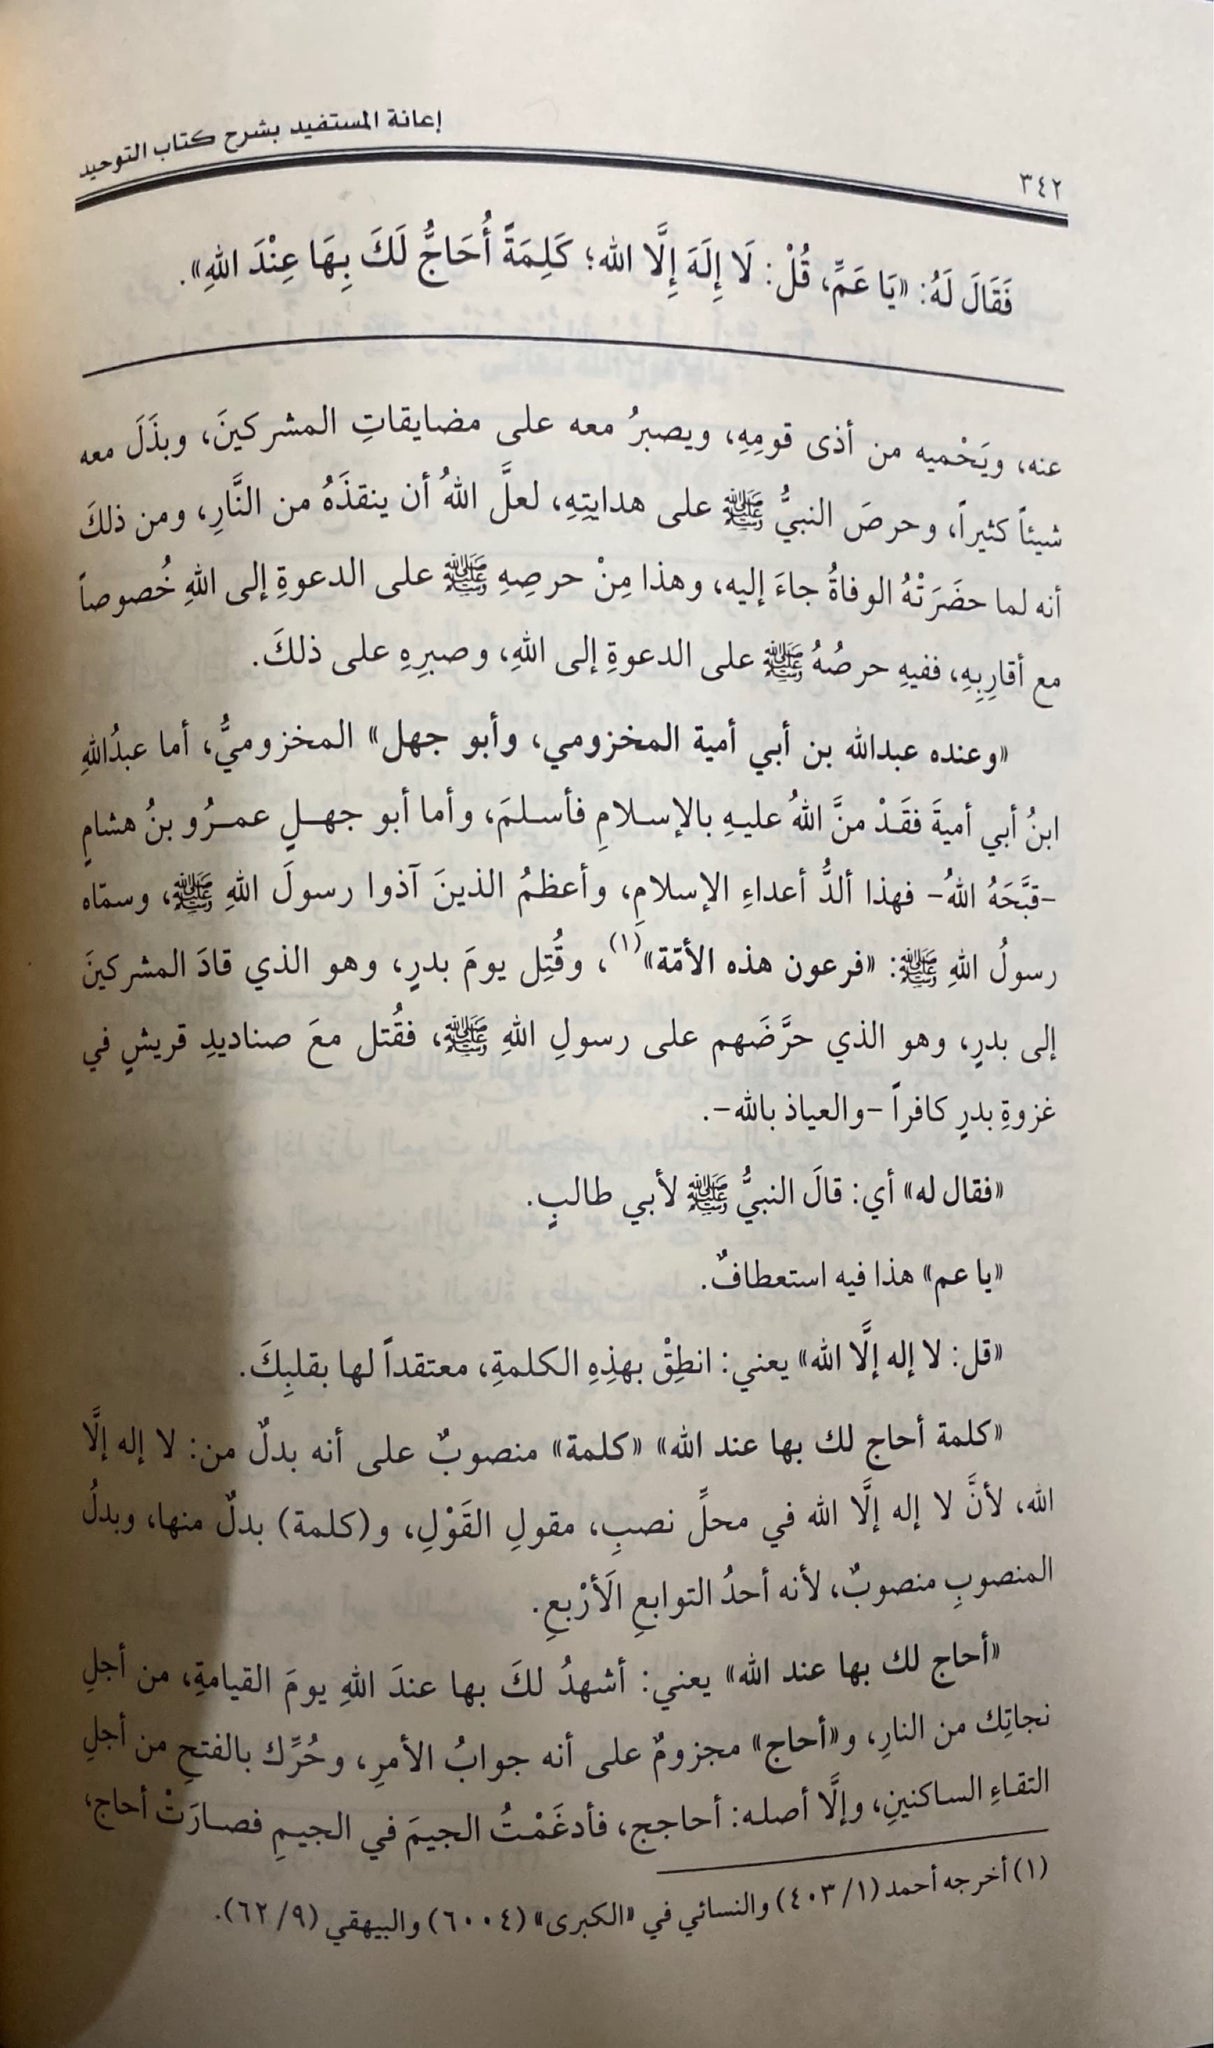 اعانة المستفيد بشرح كتاب التوحيد    Ianatul Mustafid Bi Sharhi Kitab Al Tawhid